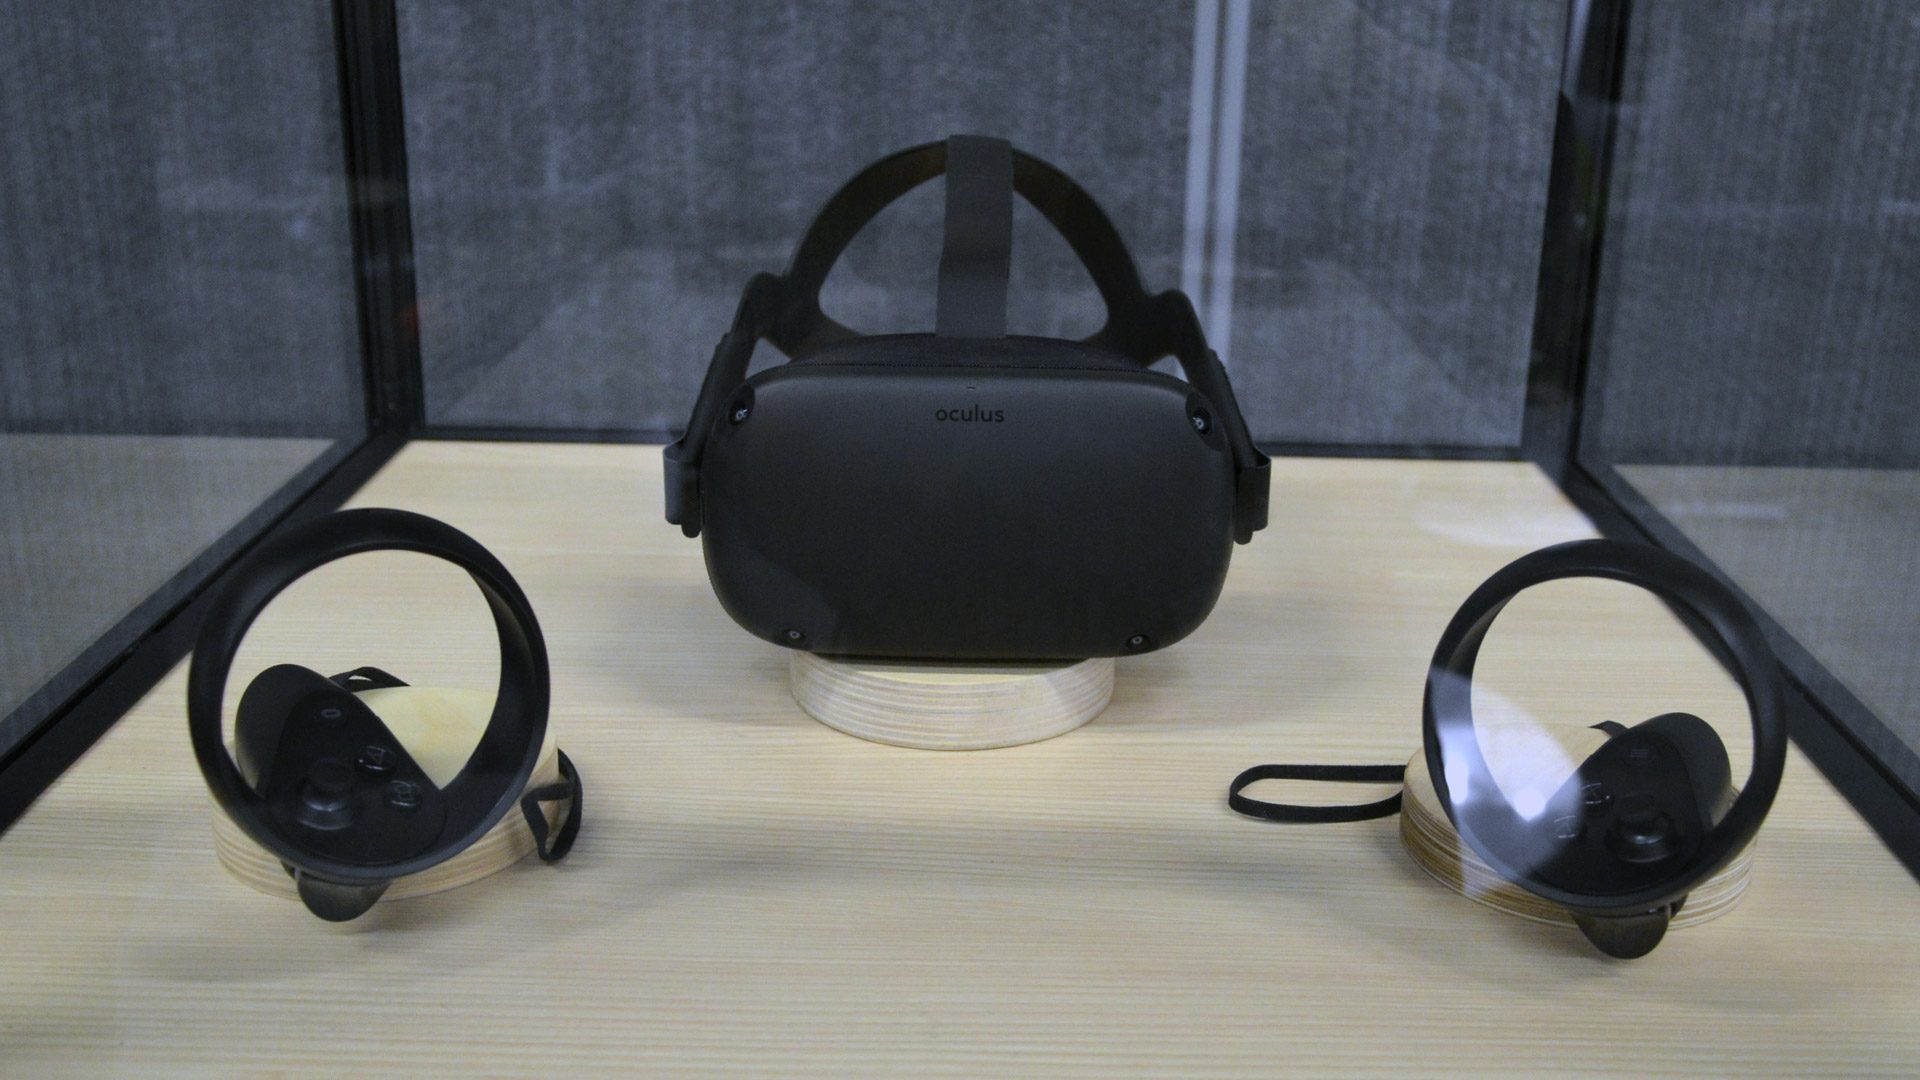 Oculus Quest, недавно анонсированная автономная гарнитура 6DOF VR (бывшая Project Santa Cruz), полностью похитила шоу в этом году на Oculus Connect с обещанием предложить некоторые очень похожие на Rift впечатления в мобильном форм-факторе